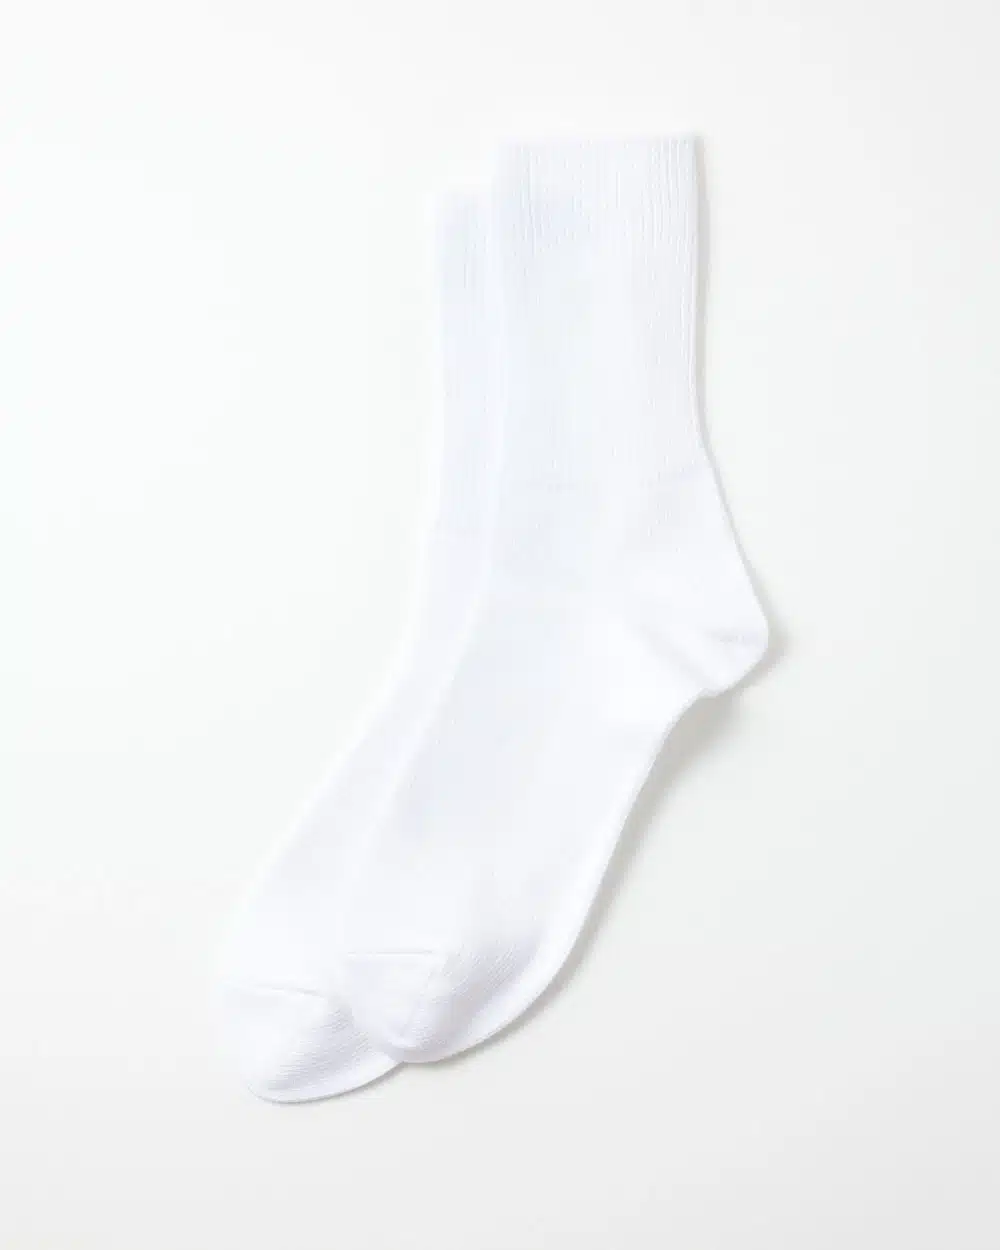 RoToTo Organic Daily 3 Pack Socks - White